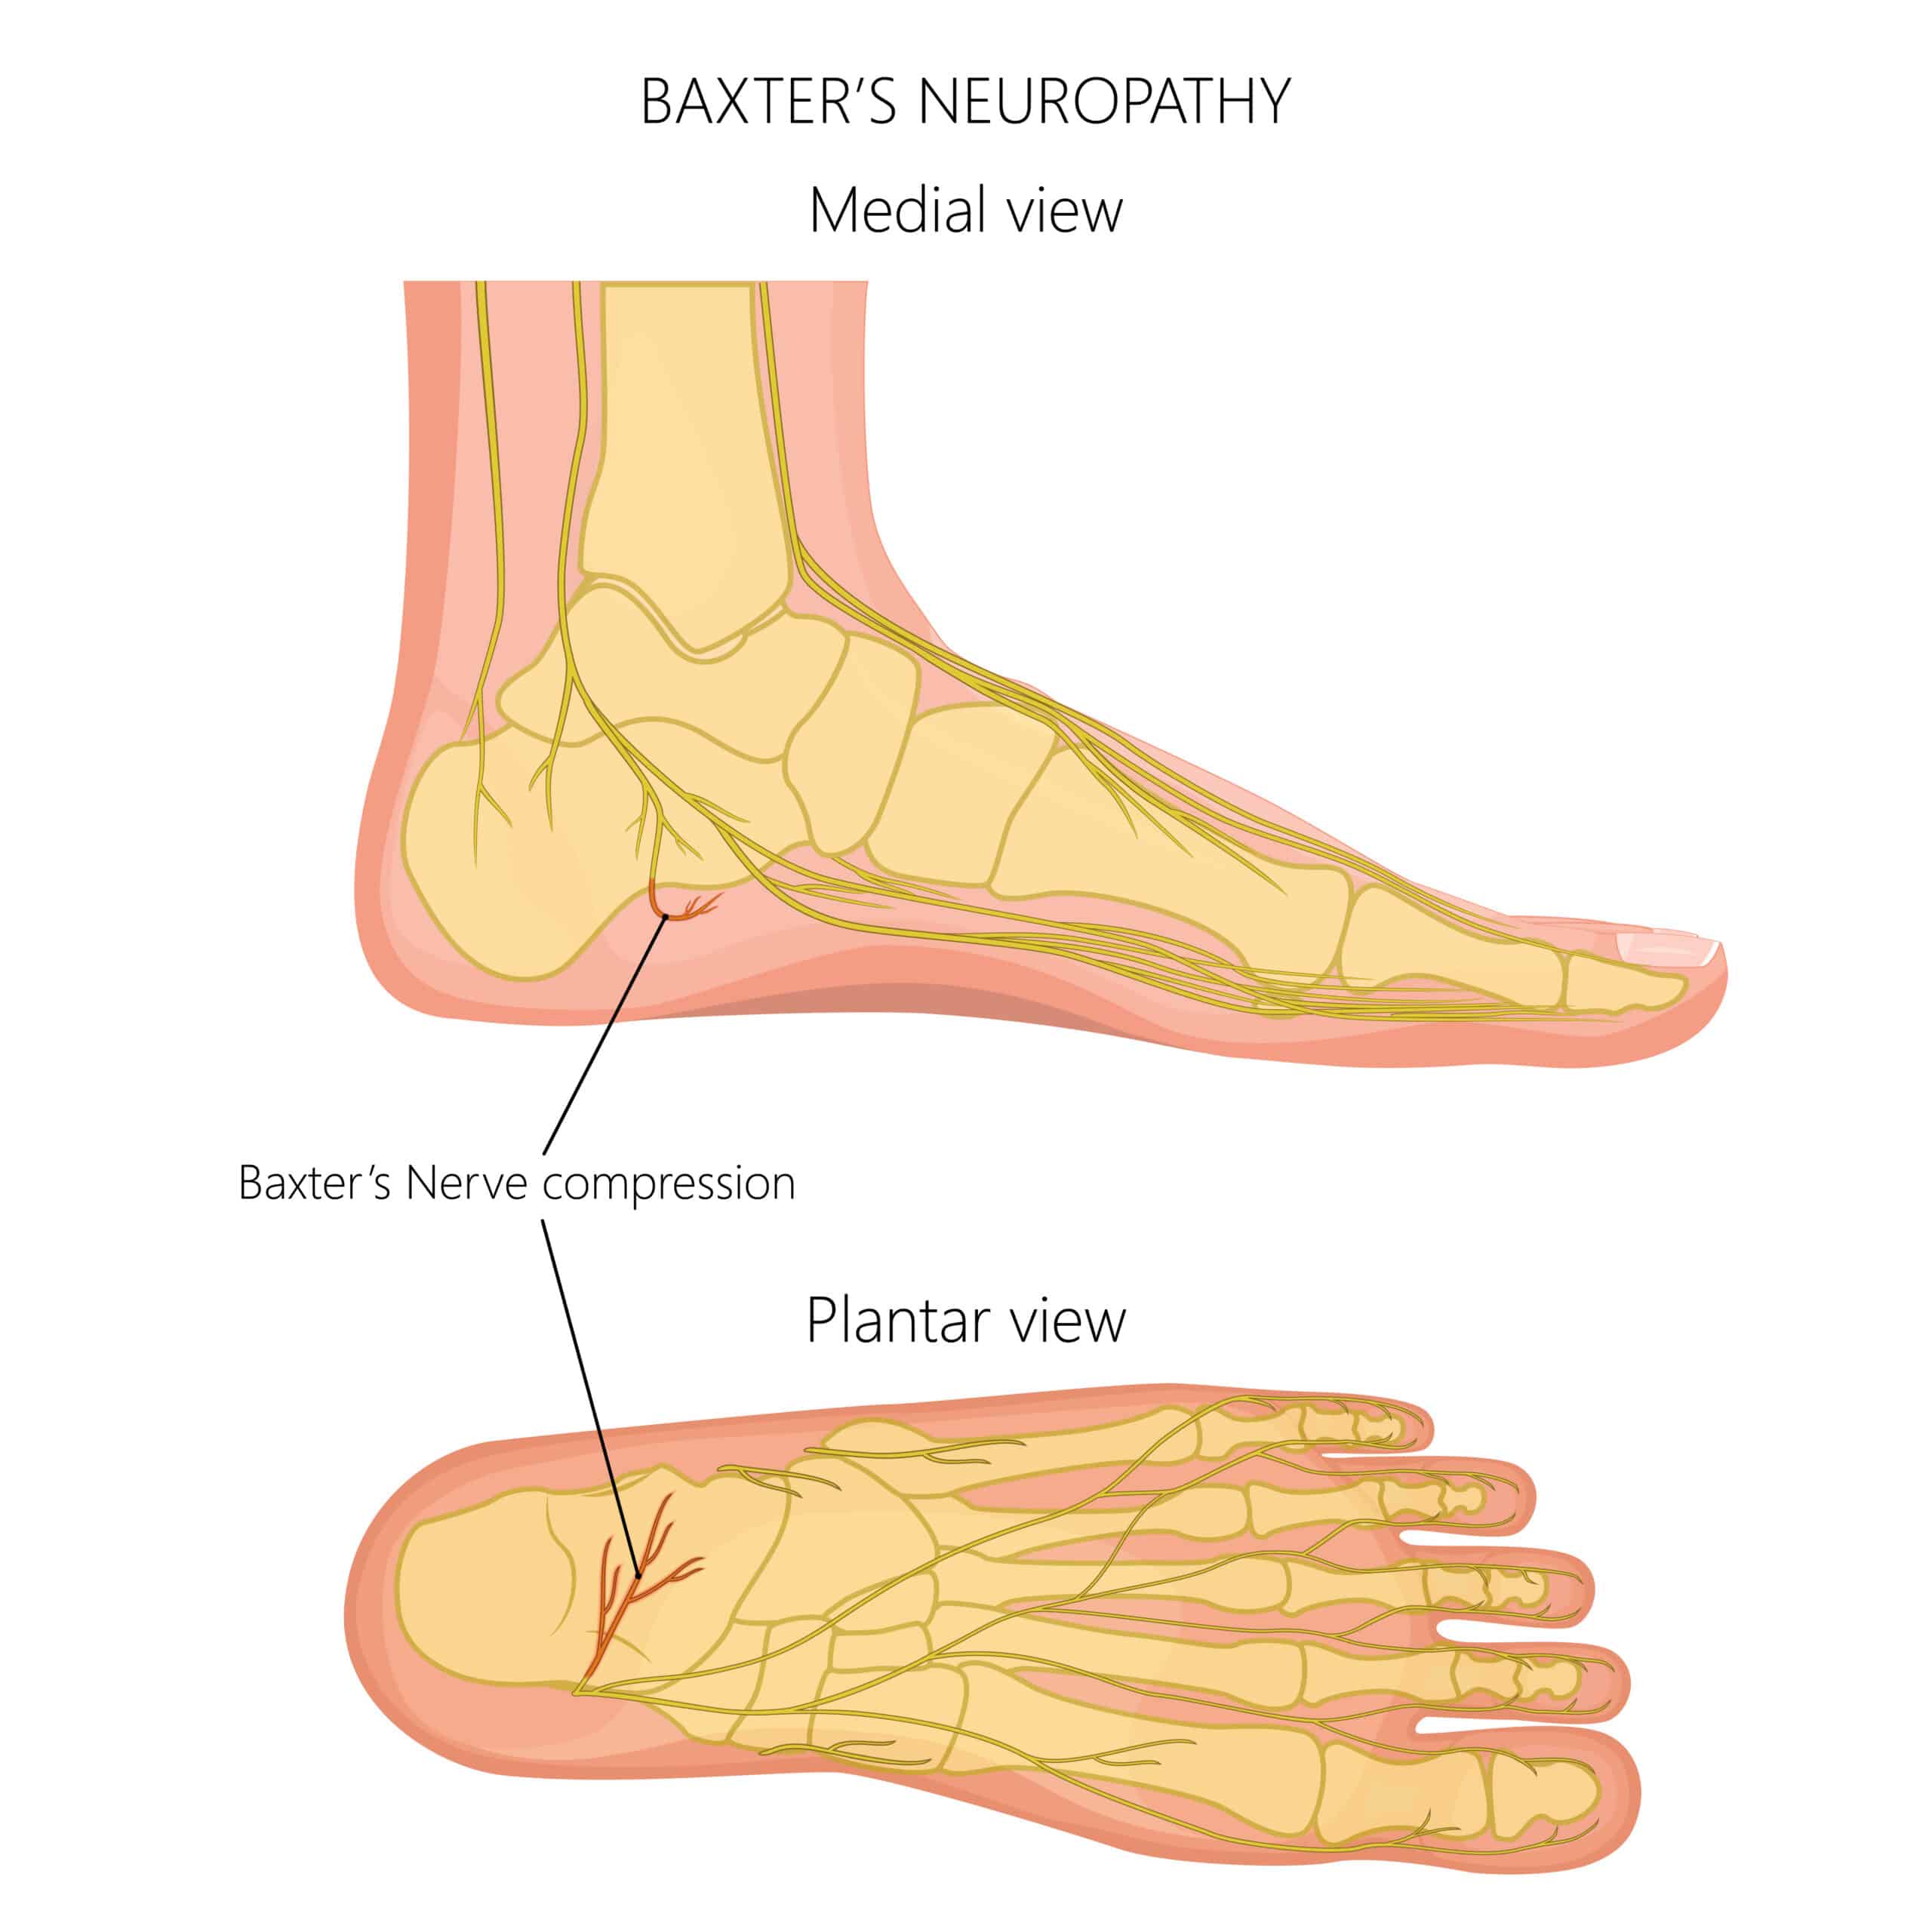 Baxters Nerve Entrapment Symptoms Causes And Treatment